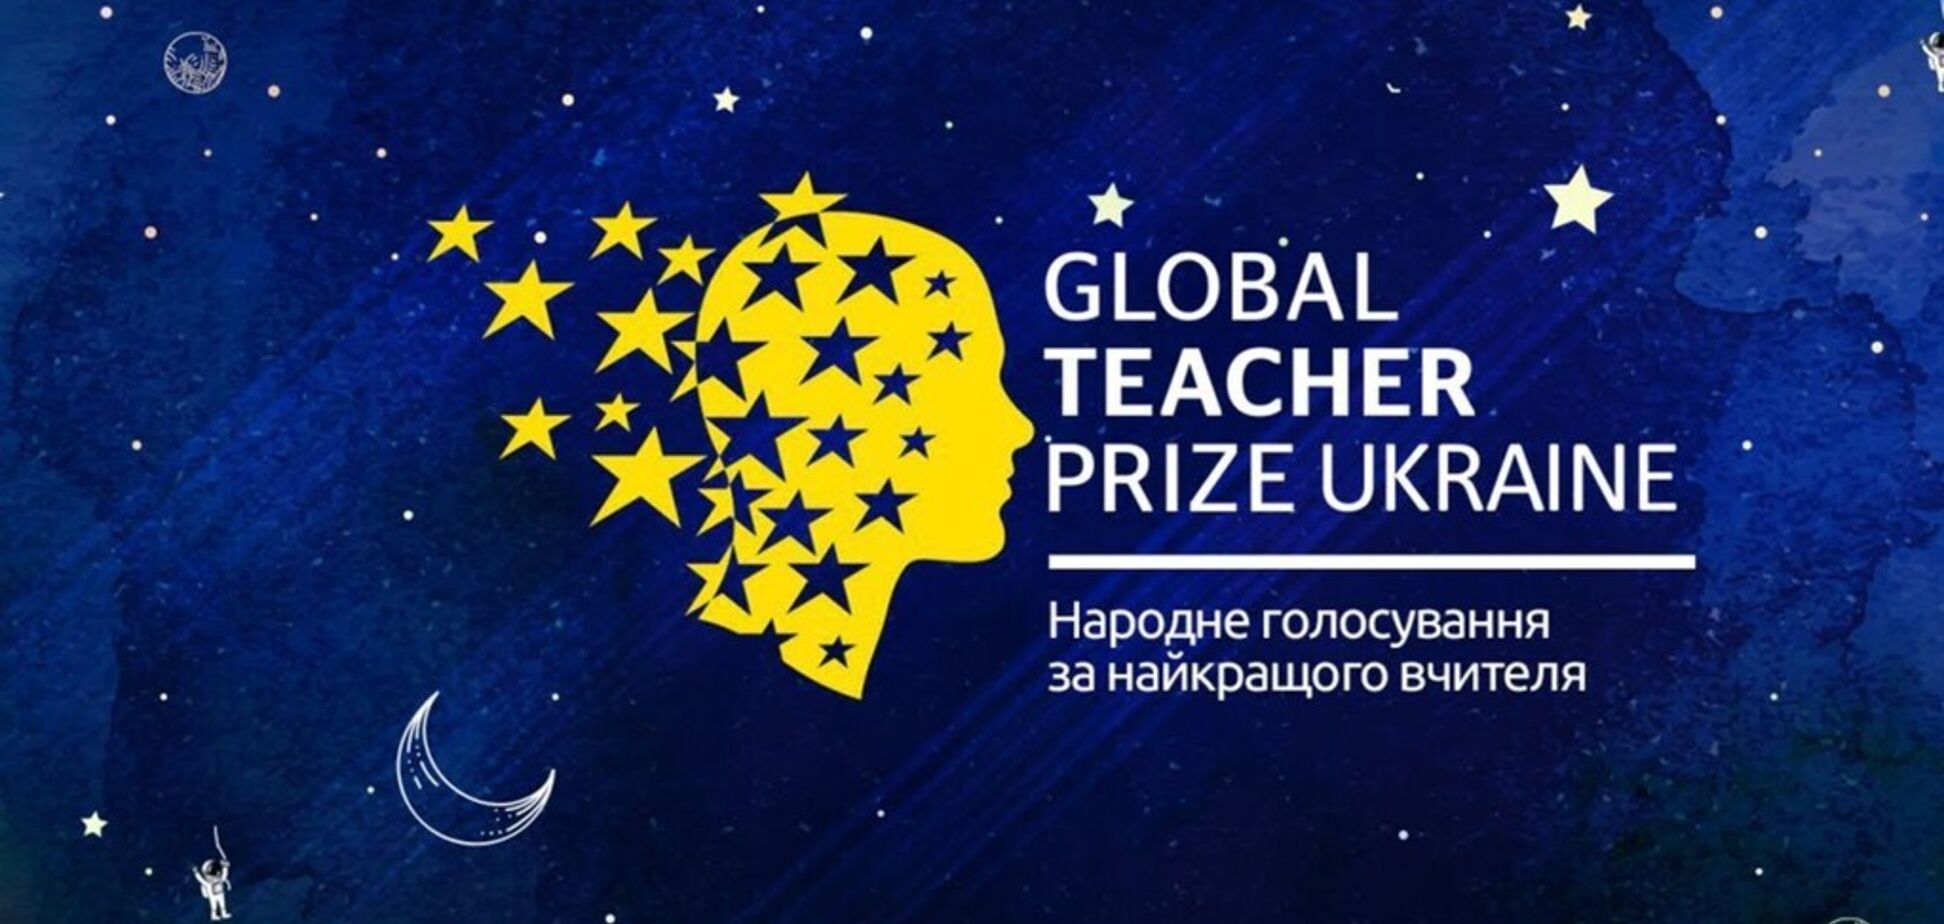 Названы лучшие учителя Украины